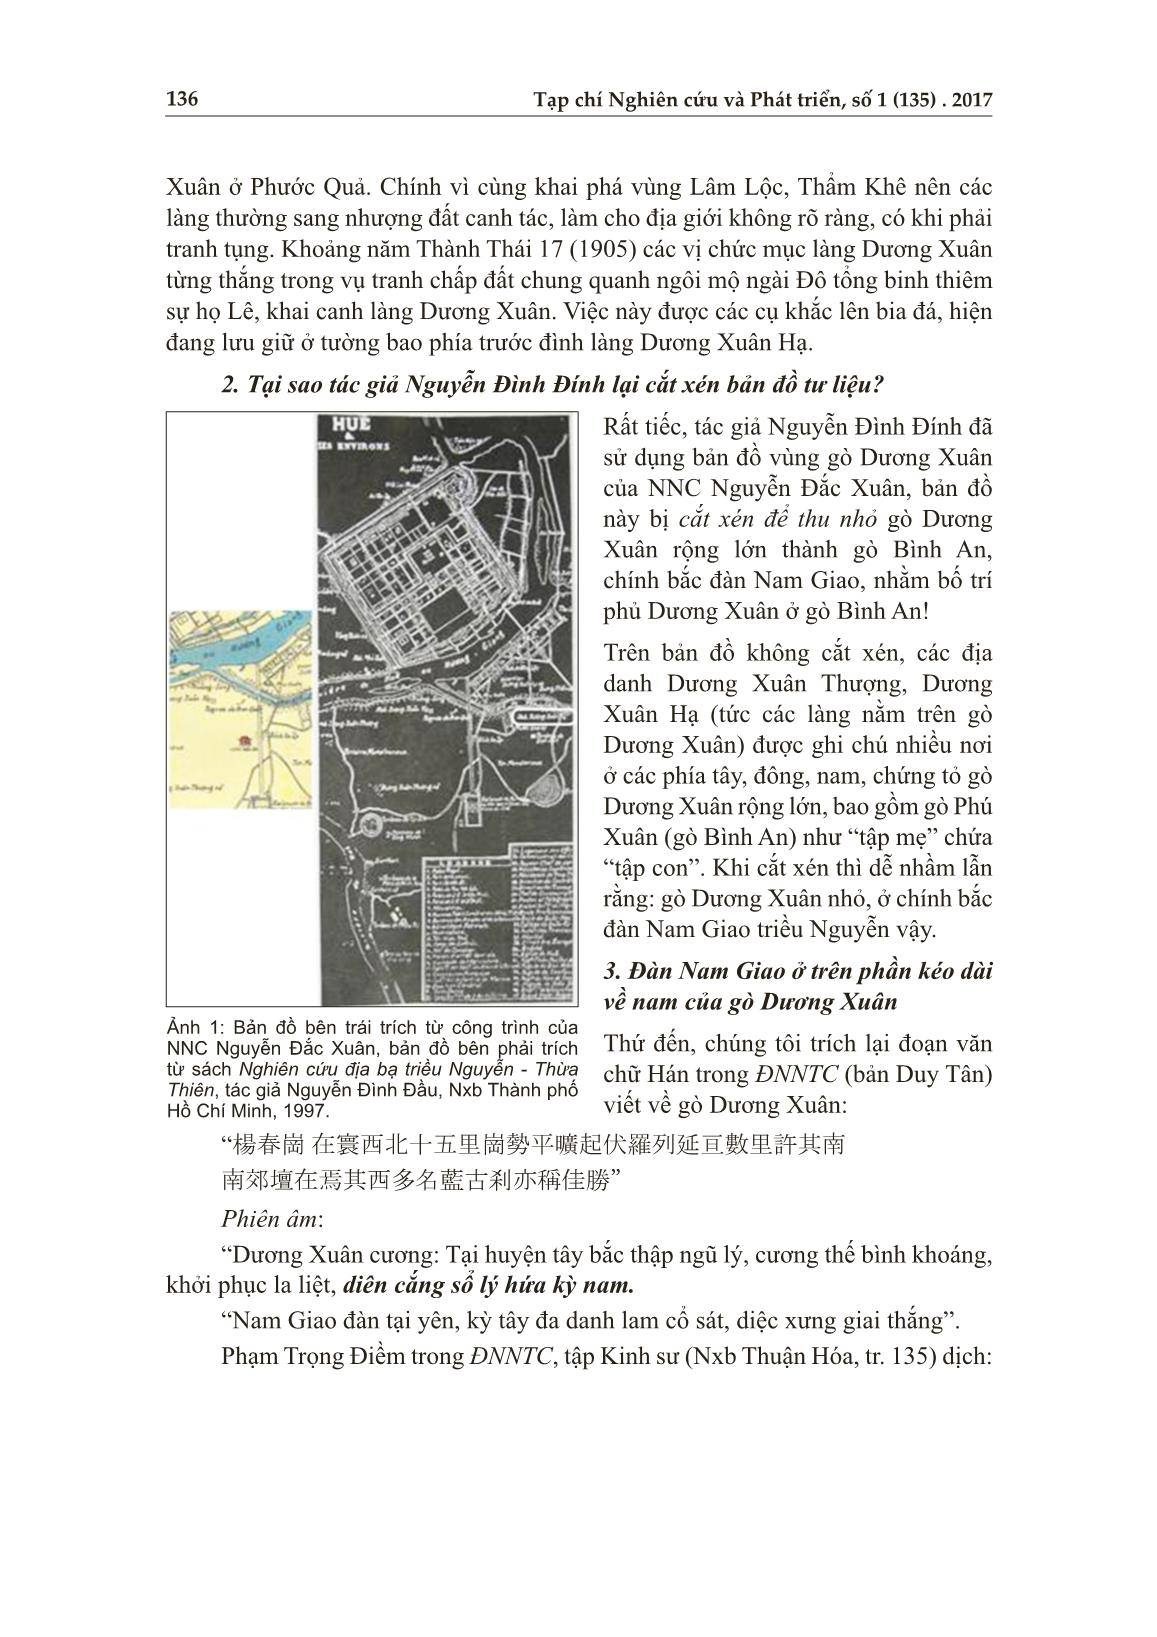 Phủ Dương Xuân: Vài chi tiết cần trao đổi với tác giả Nguyễn Đình Đính trang 3